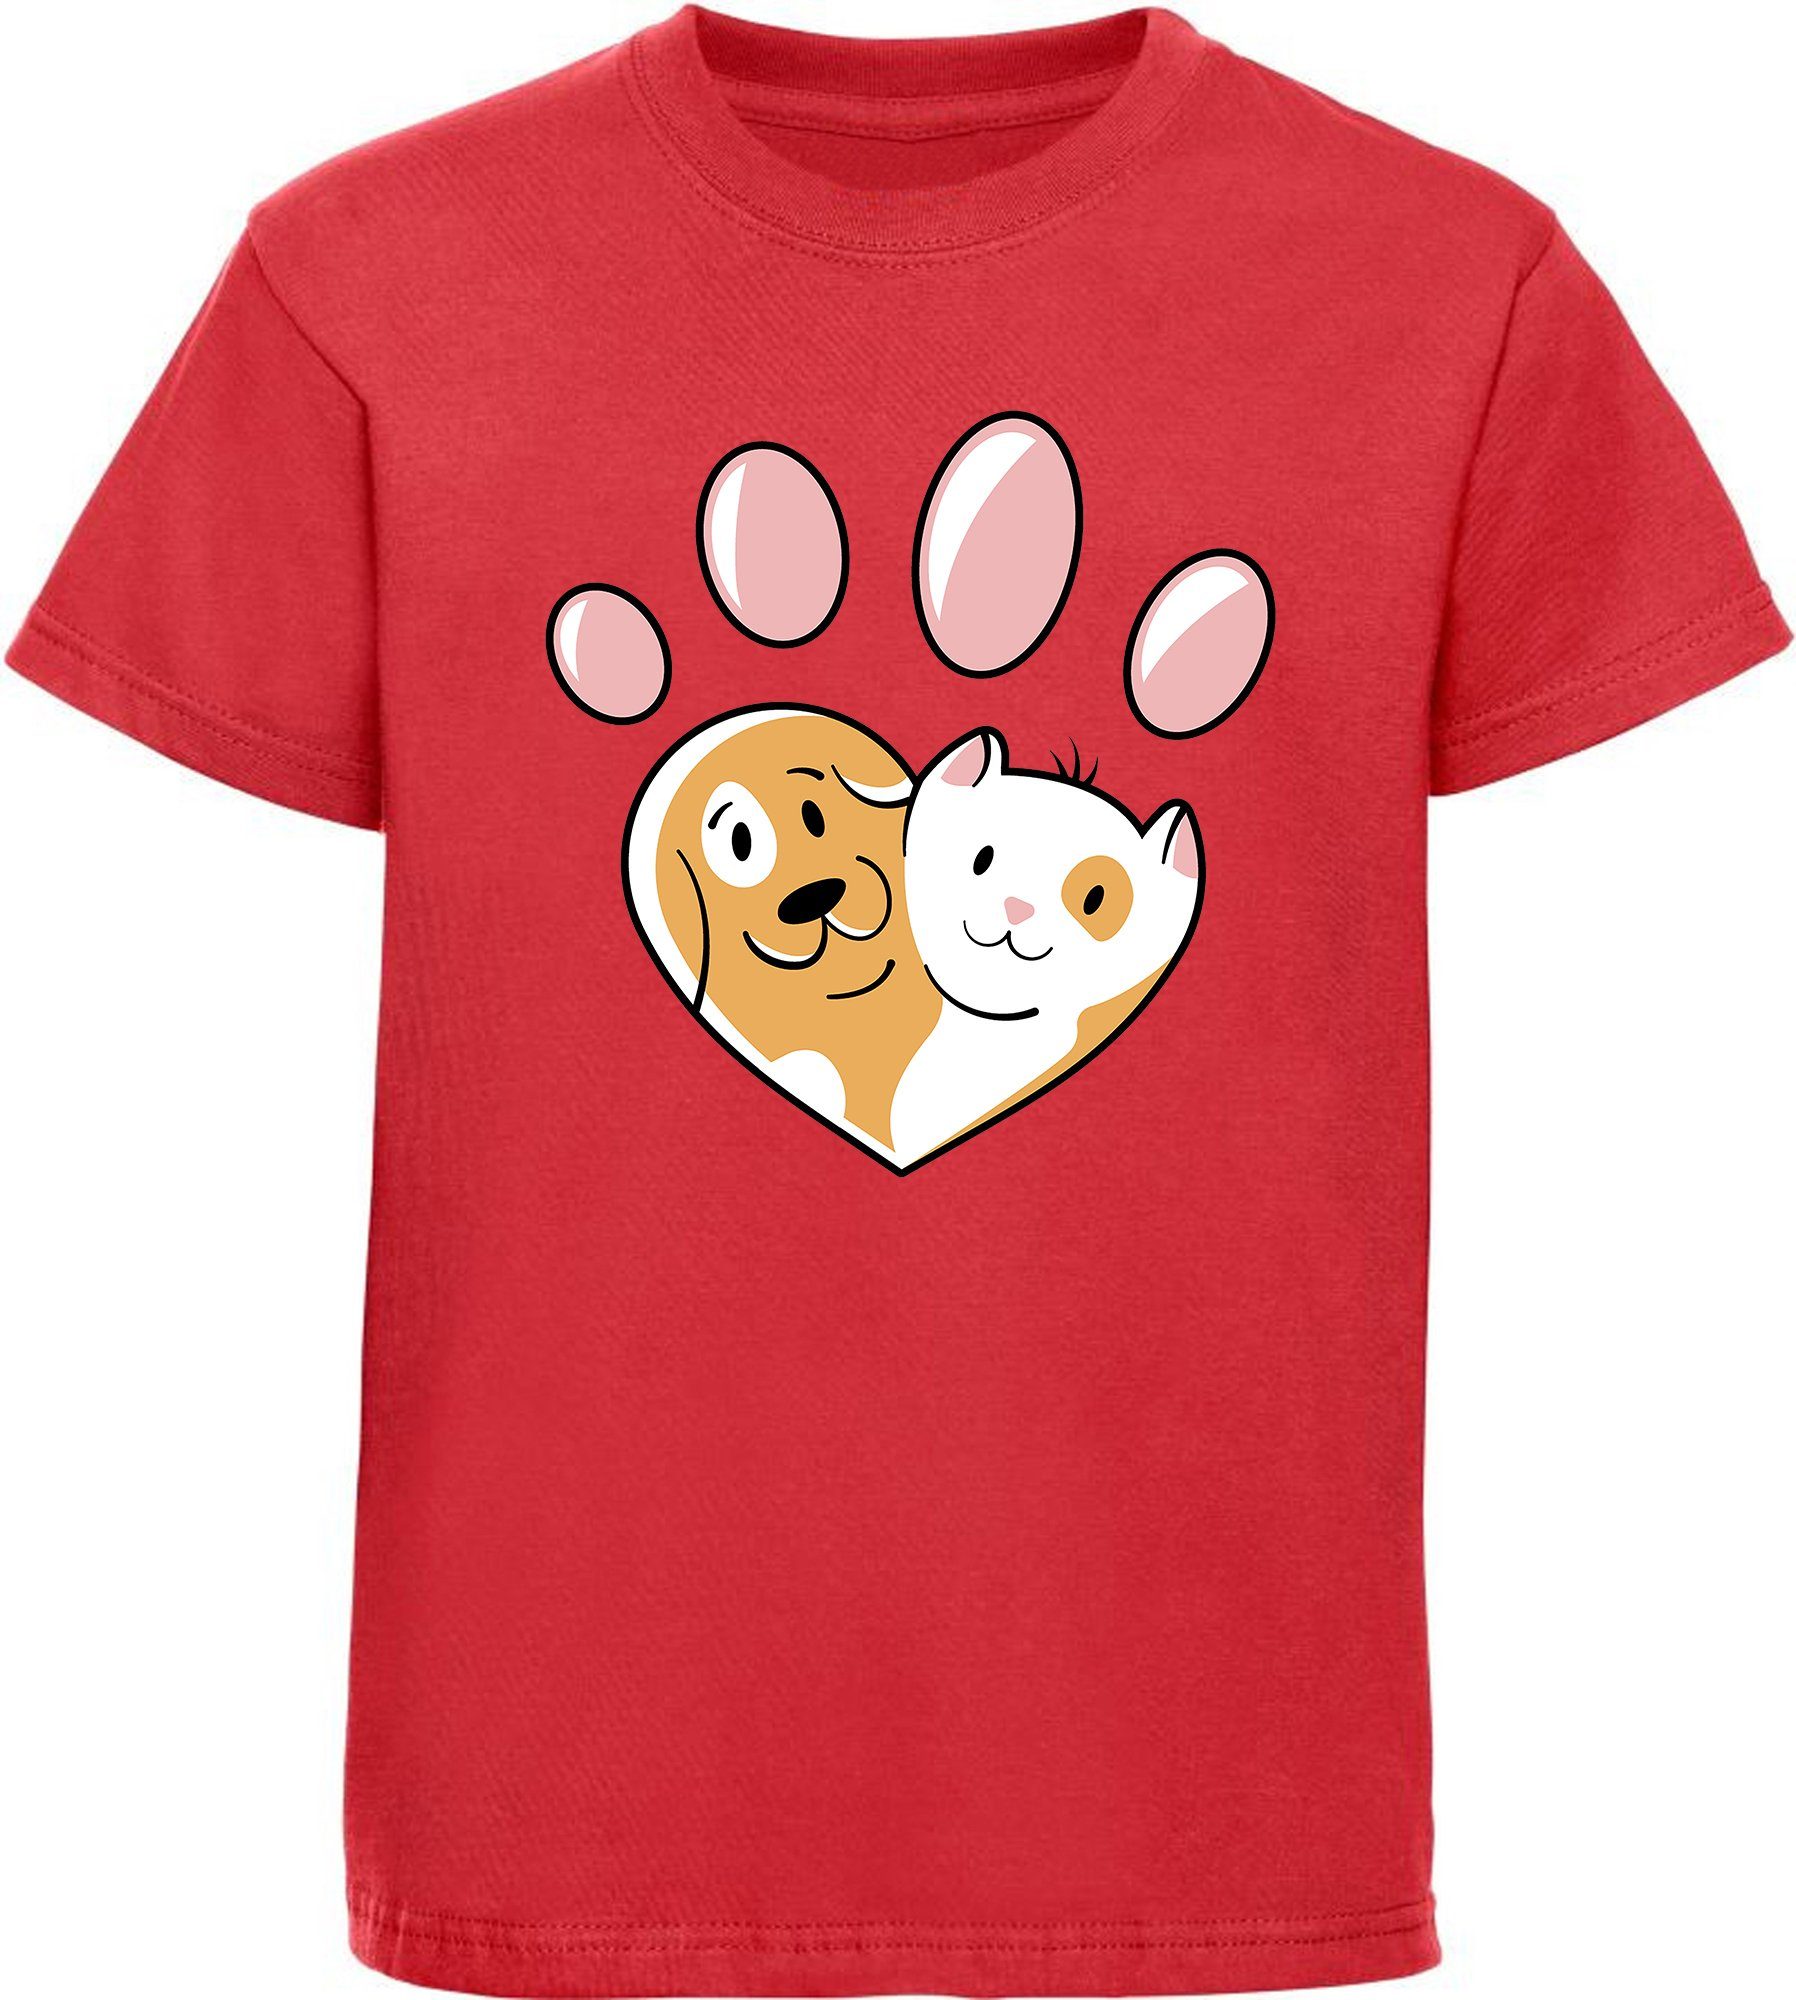 MyDesign24 Print-Shirt bedrucktes Kinder Hunde T-Shirt - Herz Pfote mit Hund und Katze Baumwollshirt mit Aufdruck, i223 rot